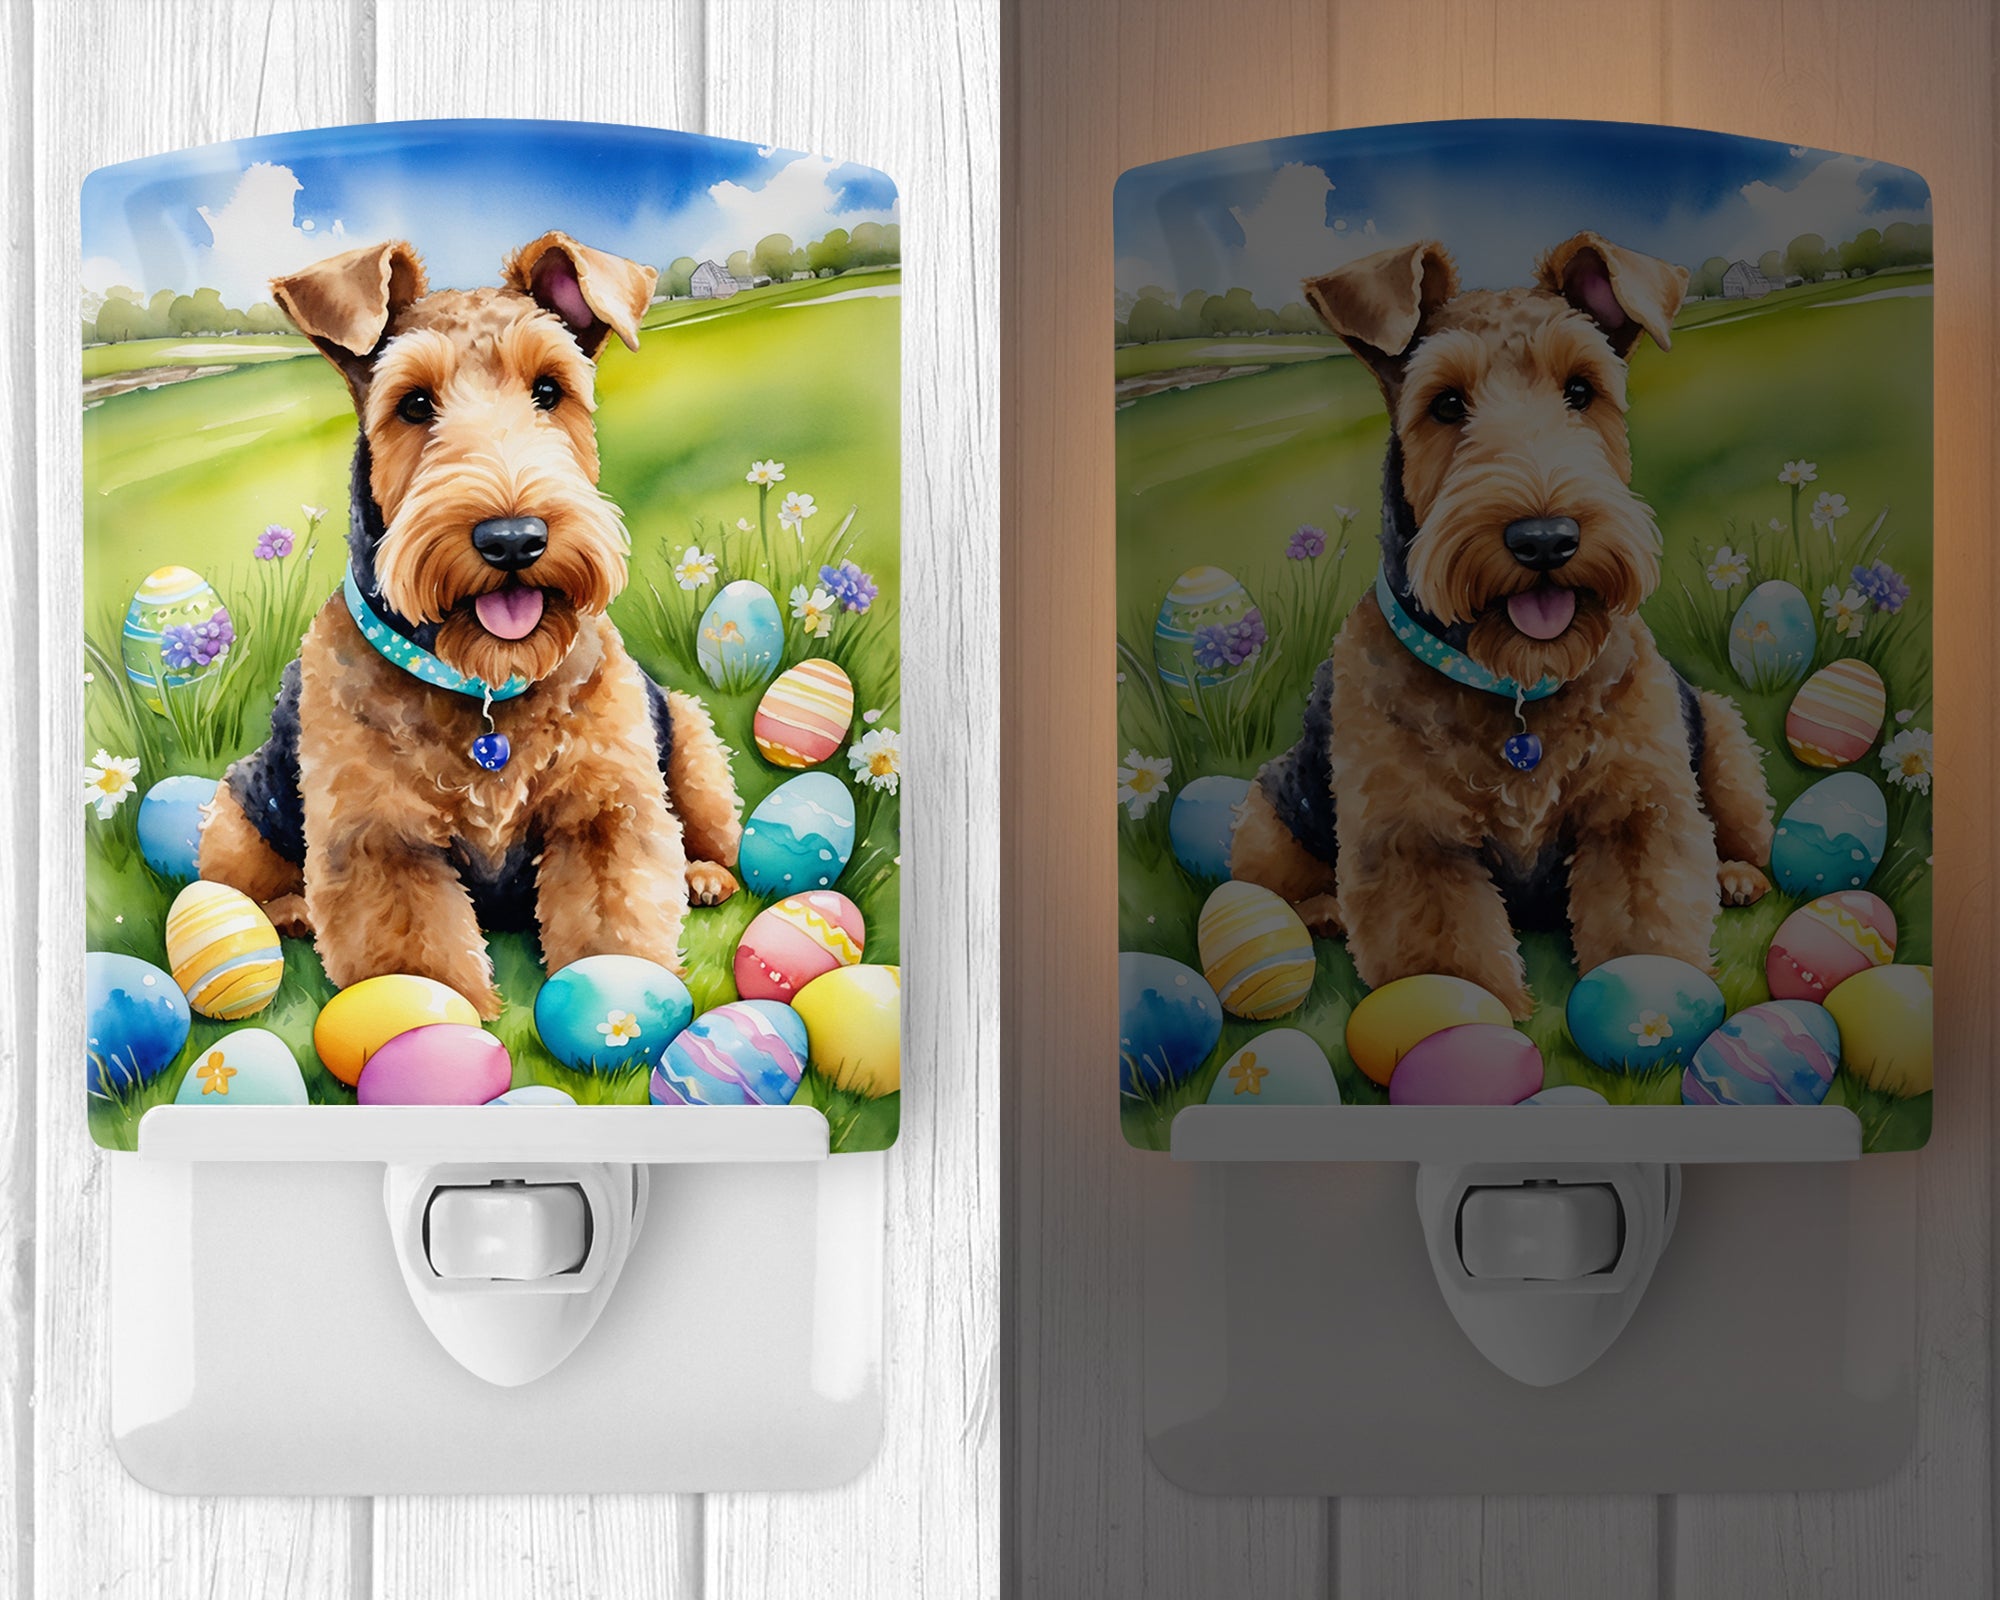 Airedale Terrier Easter Egg Hunt Ceramic Night Light